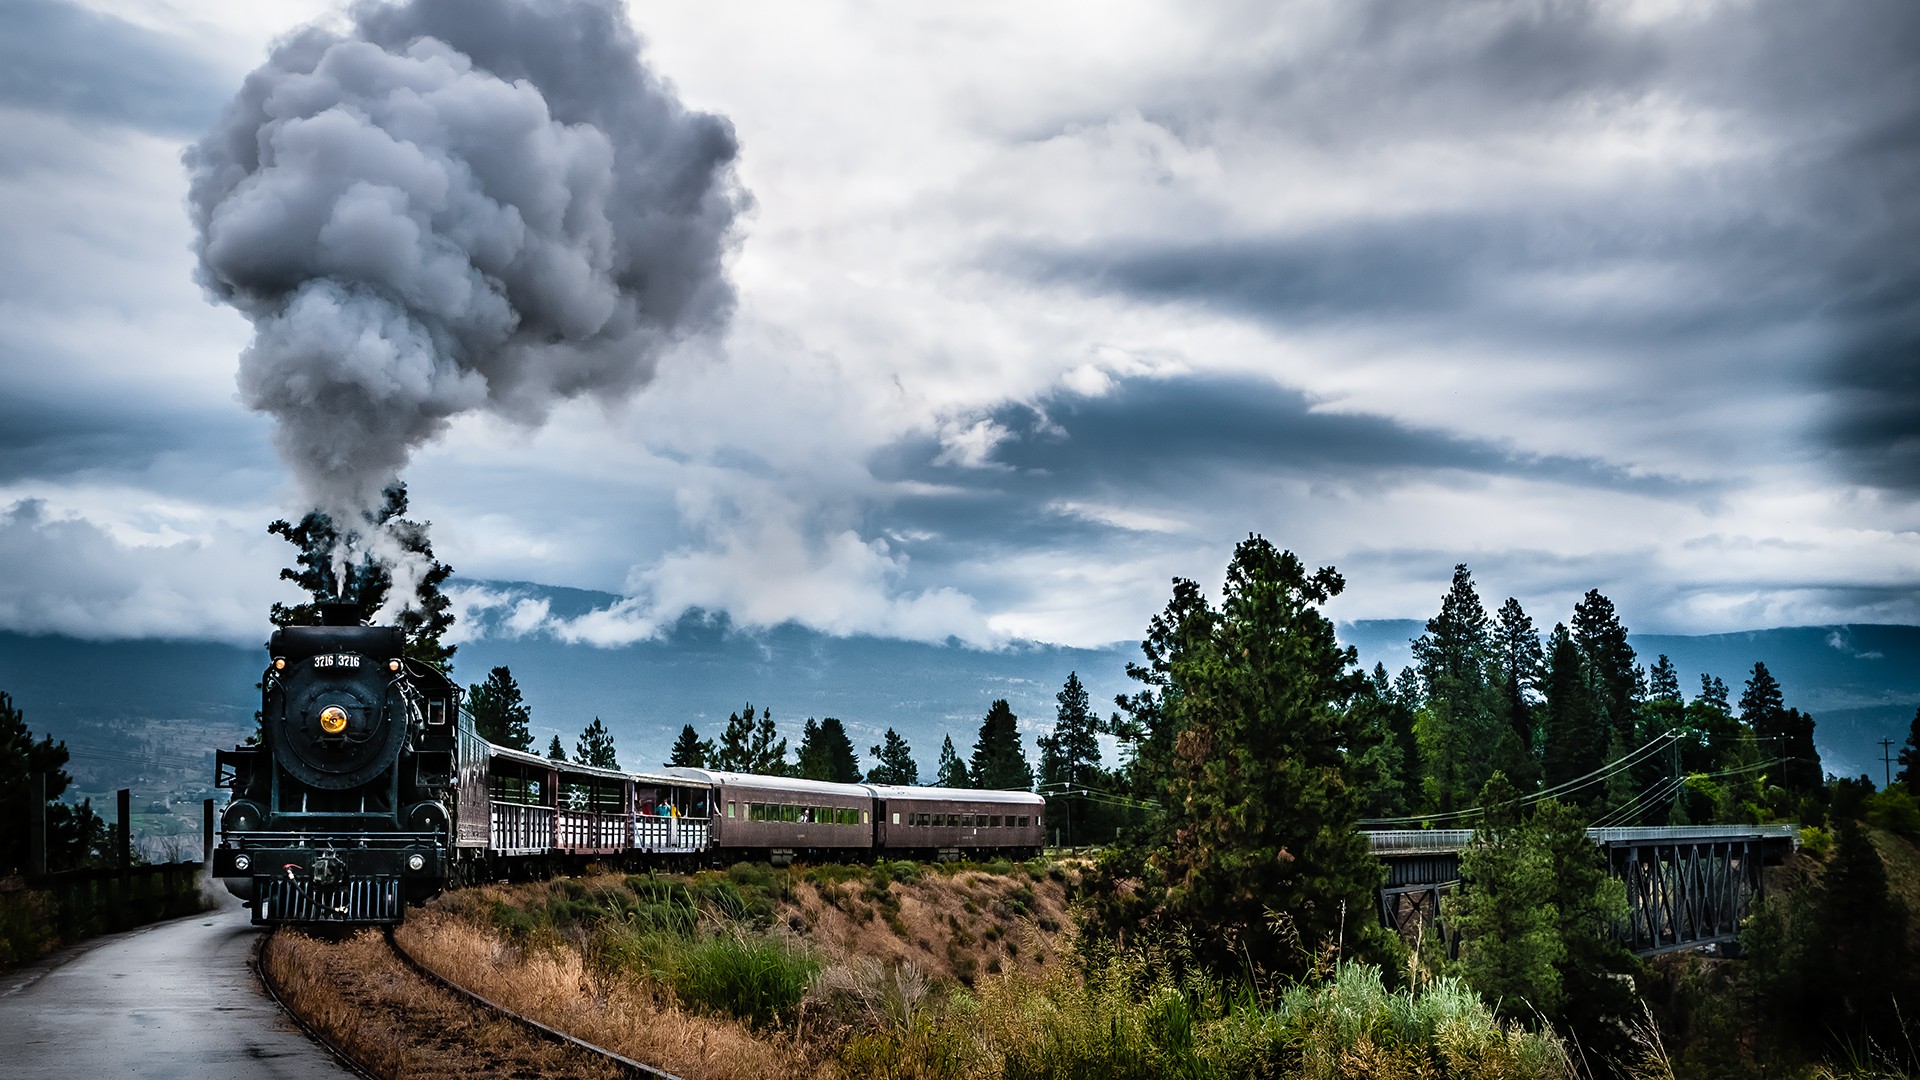 General 1920x1080 train landscape vintage railway Steam Train steam locomotive sky